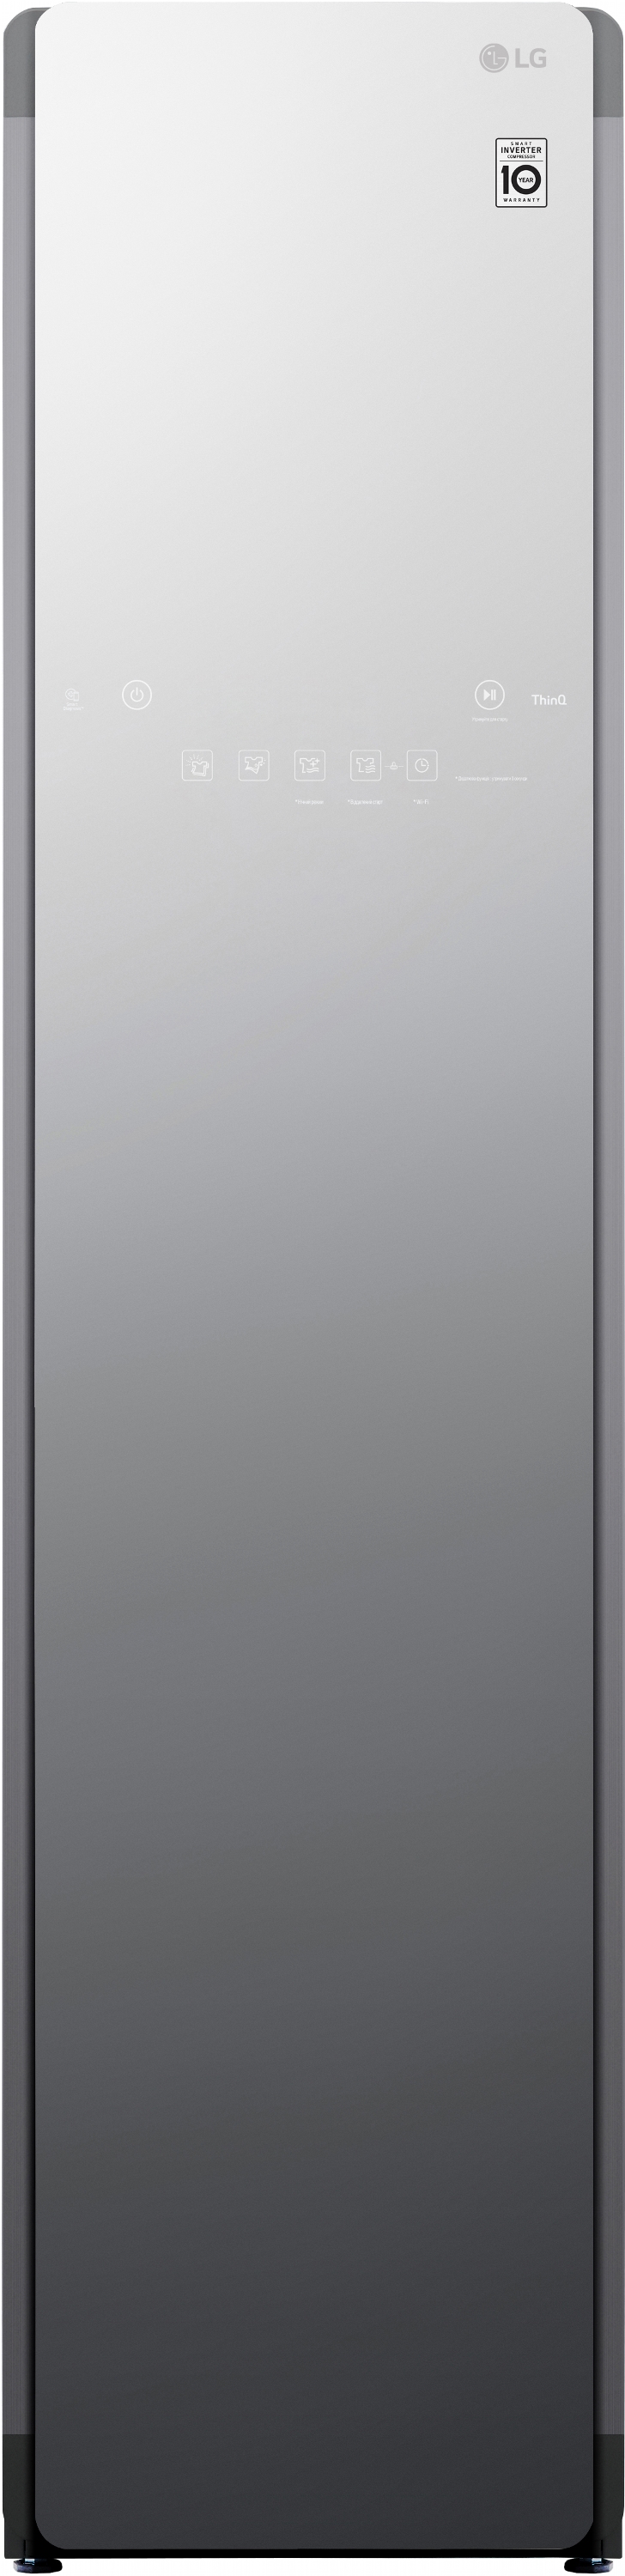 Паровой шкаф LG Styler s3mfc зеркальный